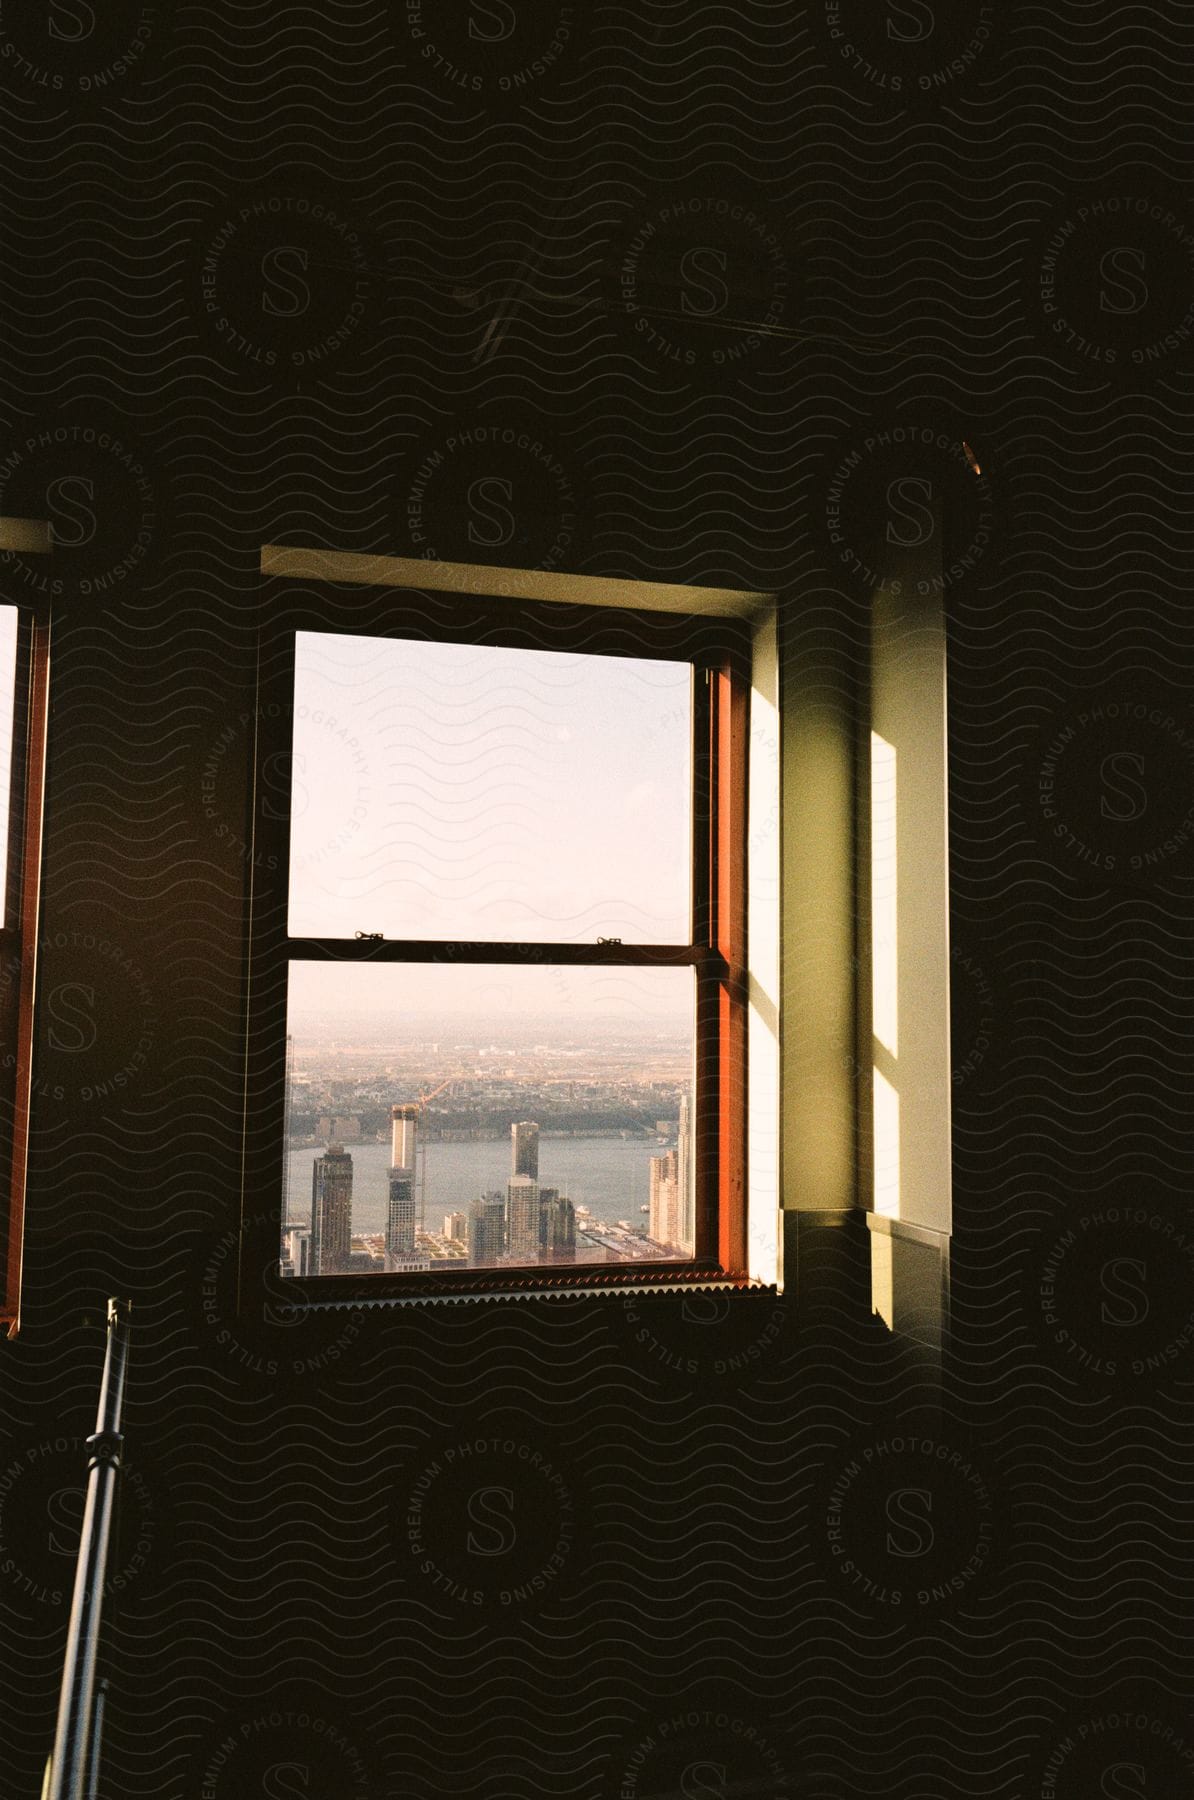 Light shines through a window framing a city skyline